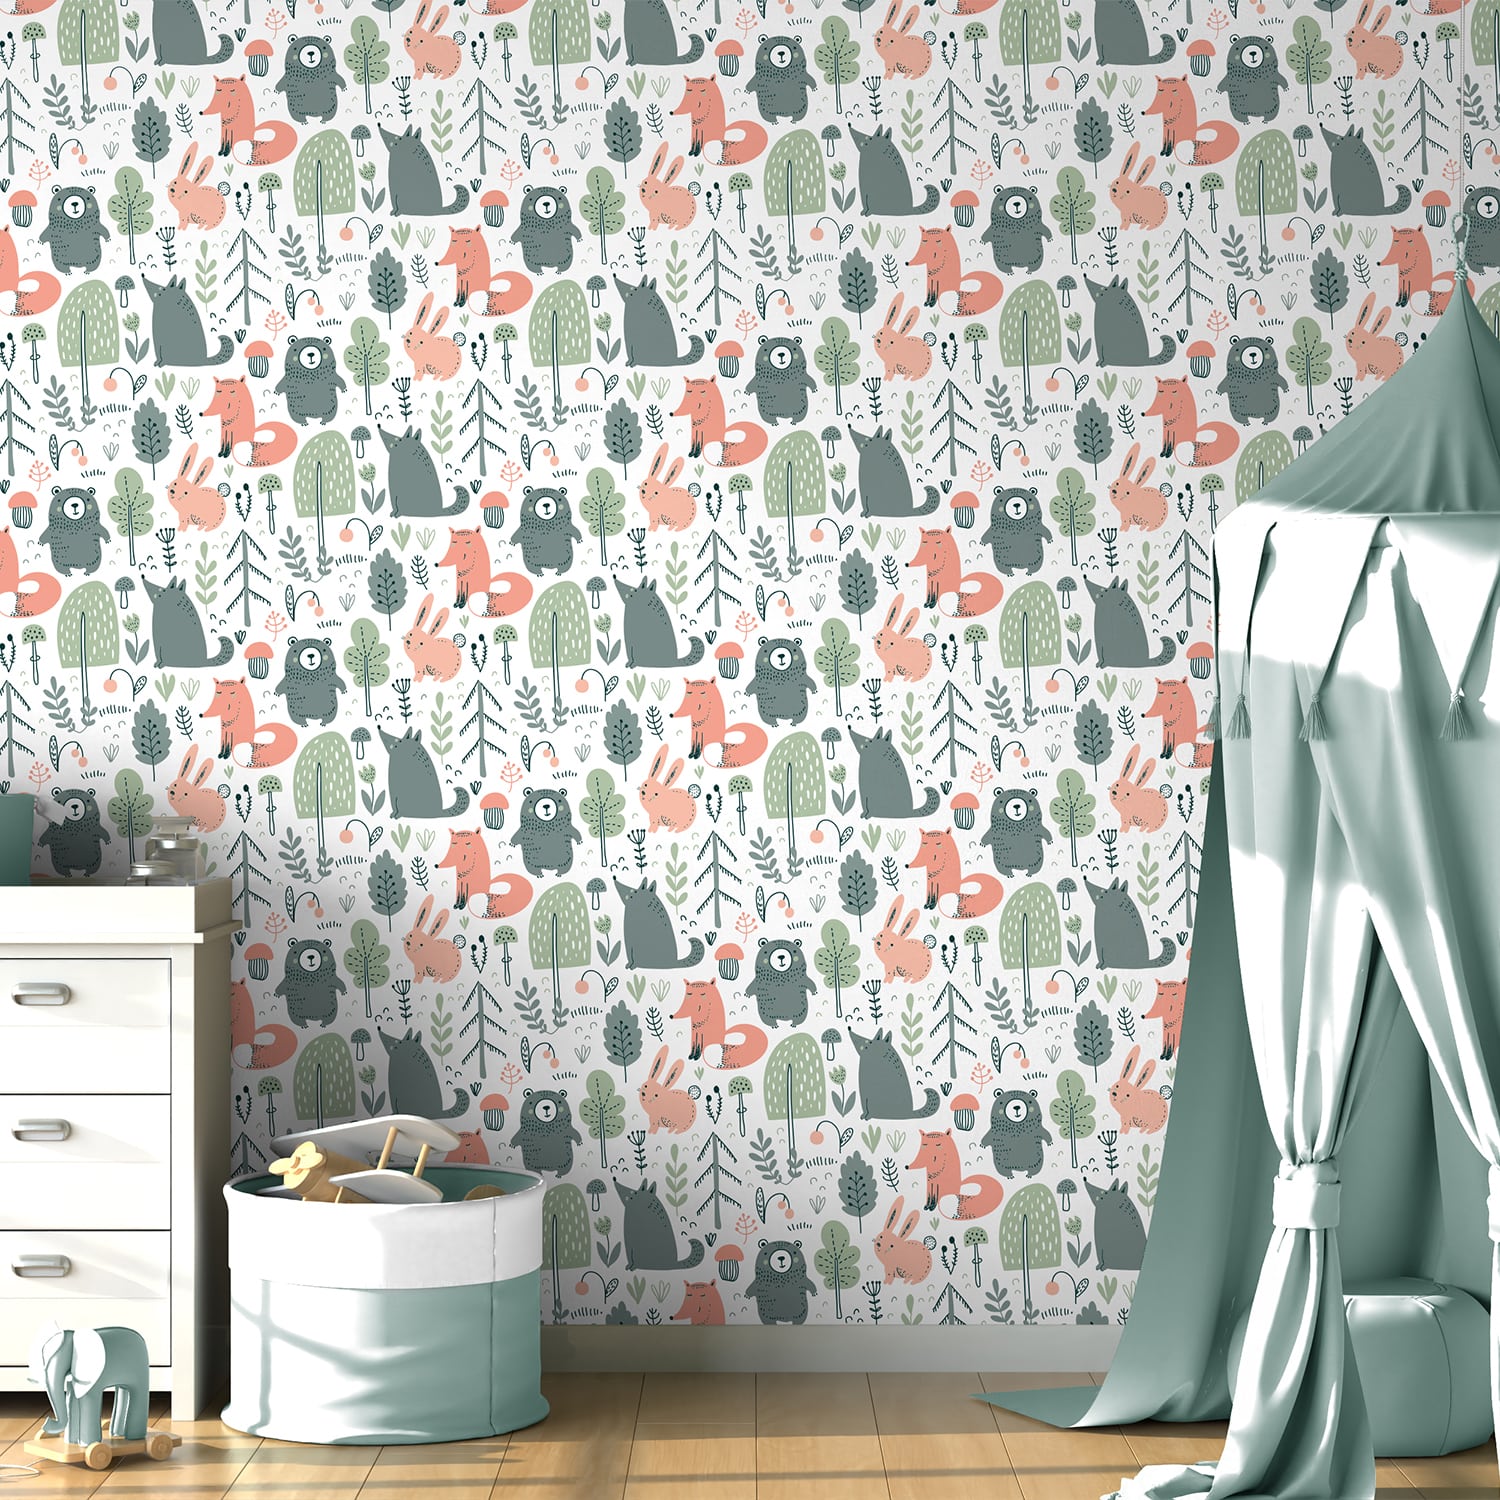 PP88-mur-papier-peint-adhesif-decoratif-revetement-vinyle-motifs-animaux-de-la-forêt-renovation-meuble-mur-min